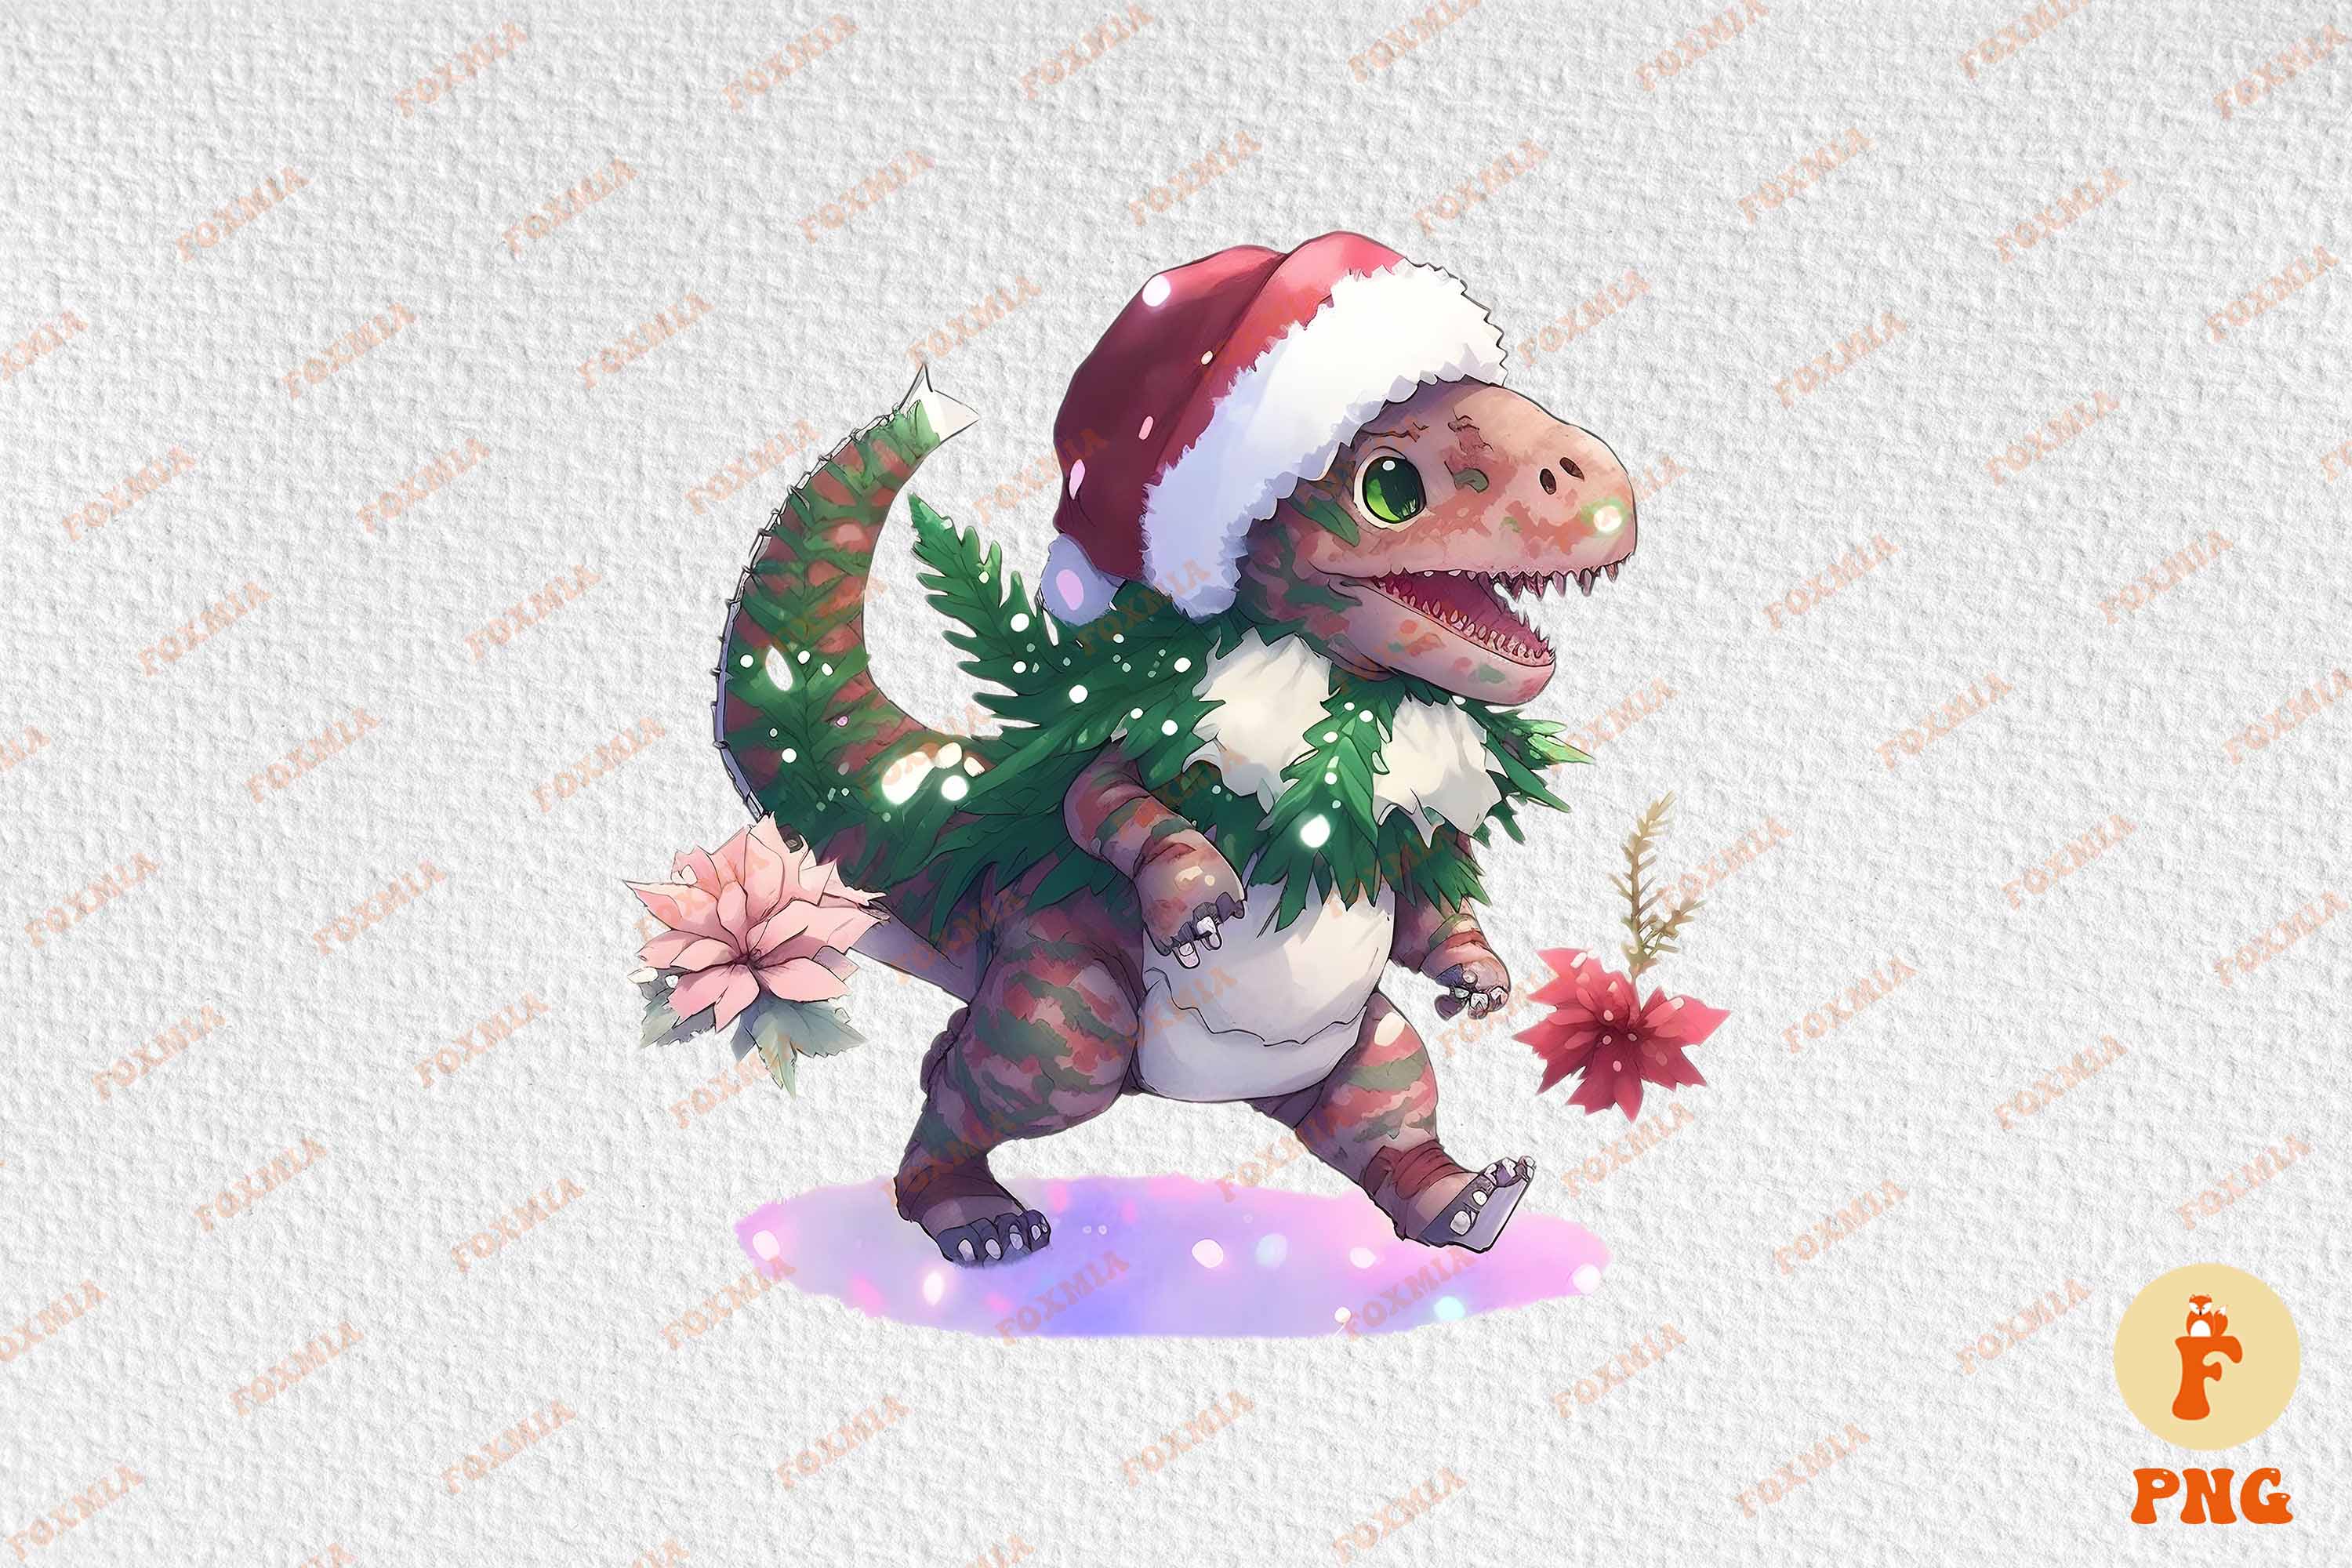 Irresistible image of a dinosaur wearing a Santa hat.